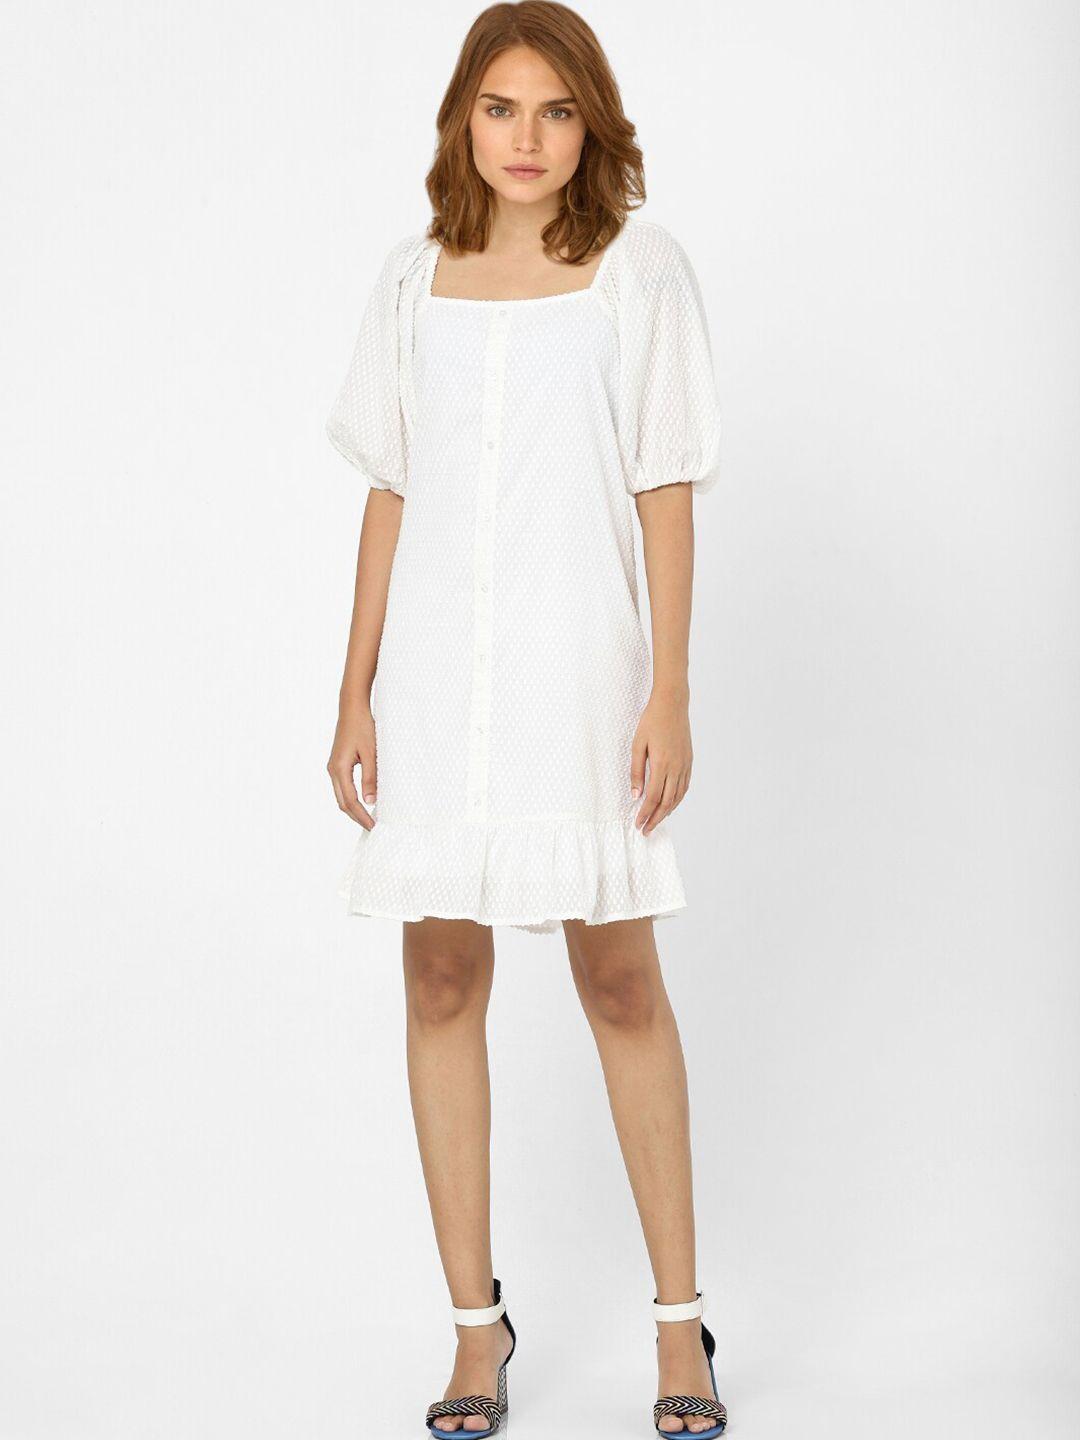 vero moda white a-line dress